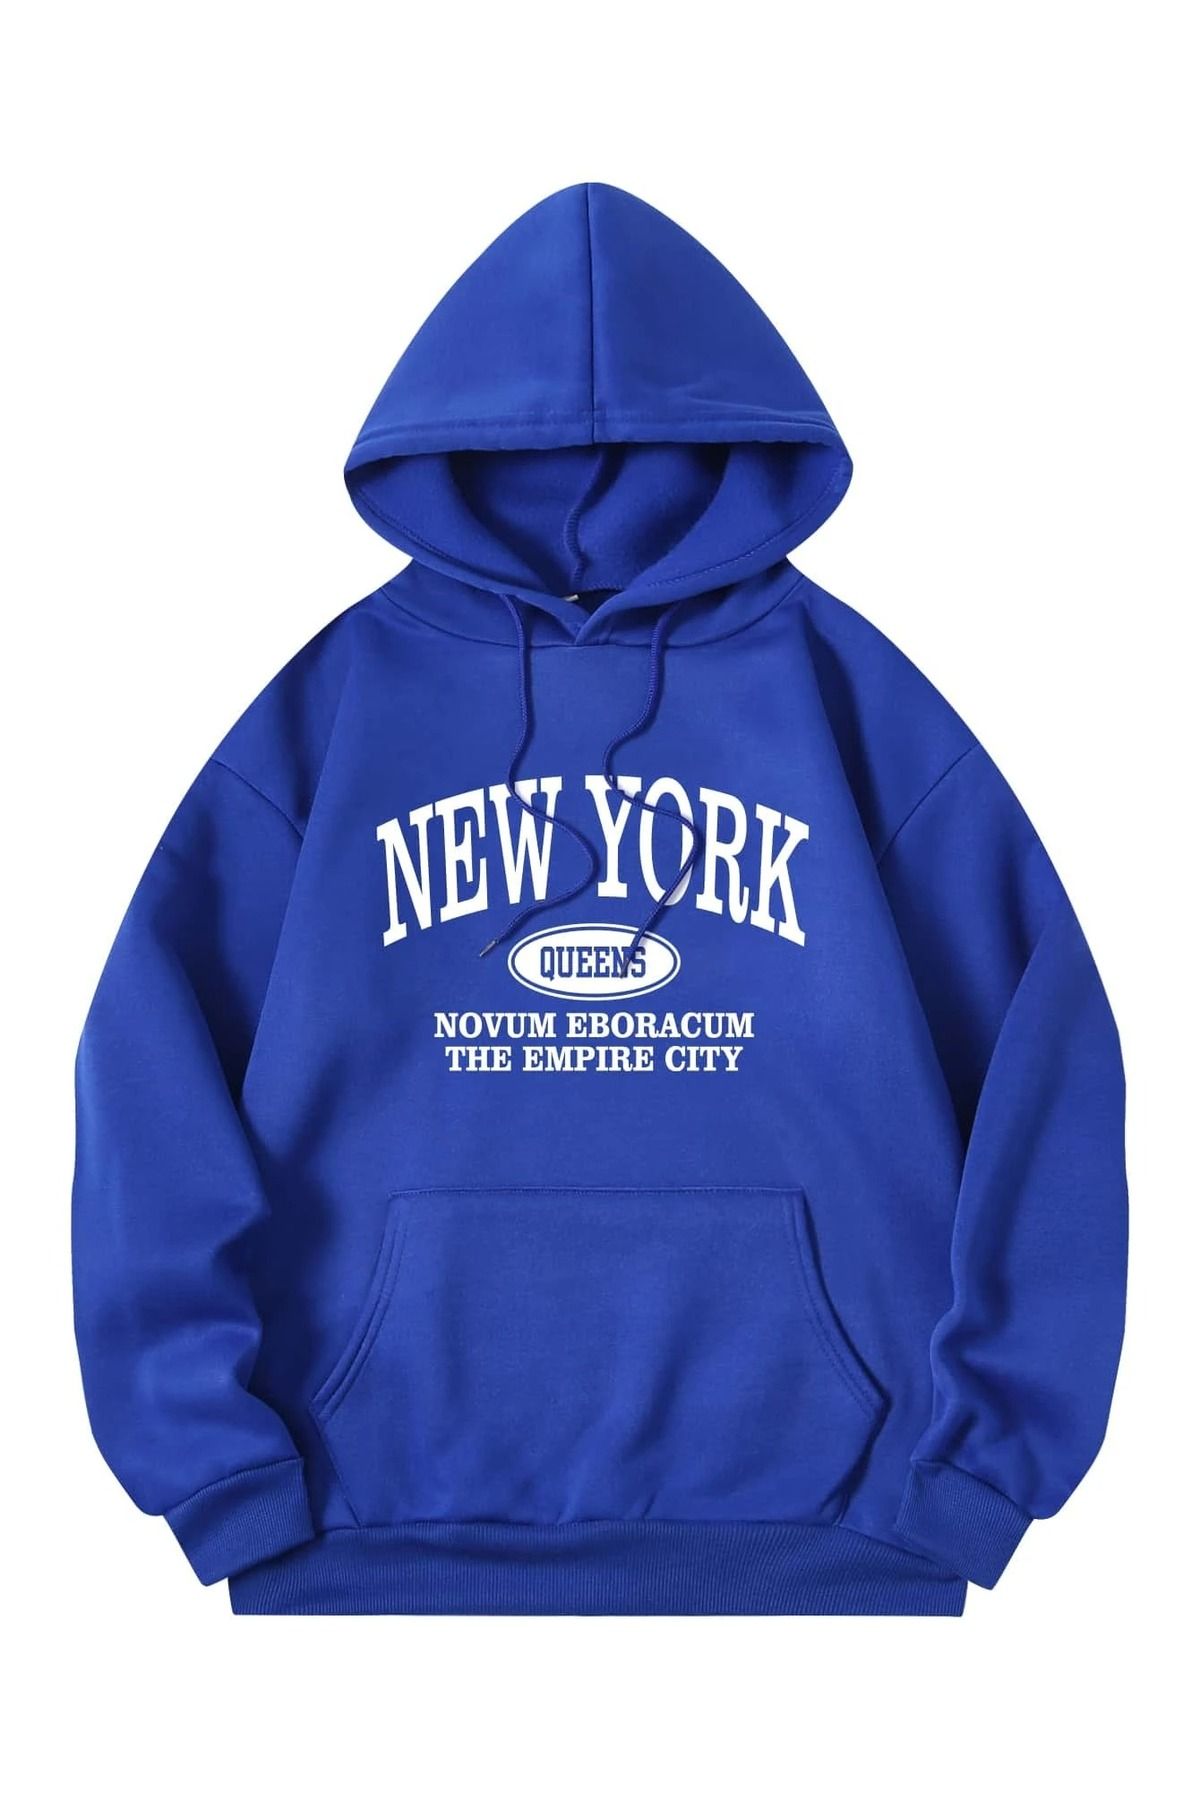 DUBU BUTİK New York Queens Sweatshirt - Sax Mavi Baskılı Oversize Kapüşonlu